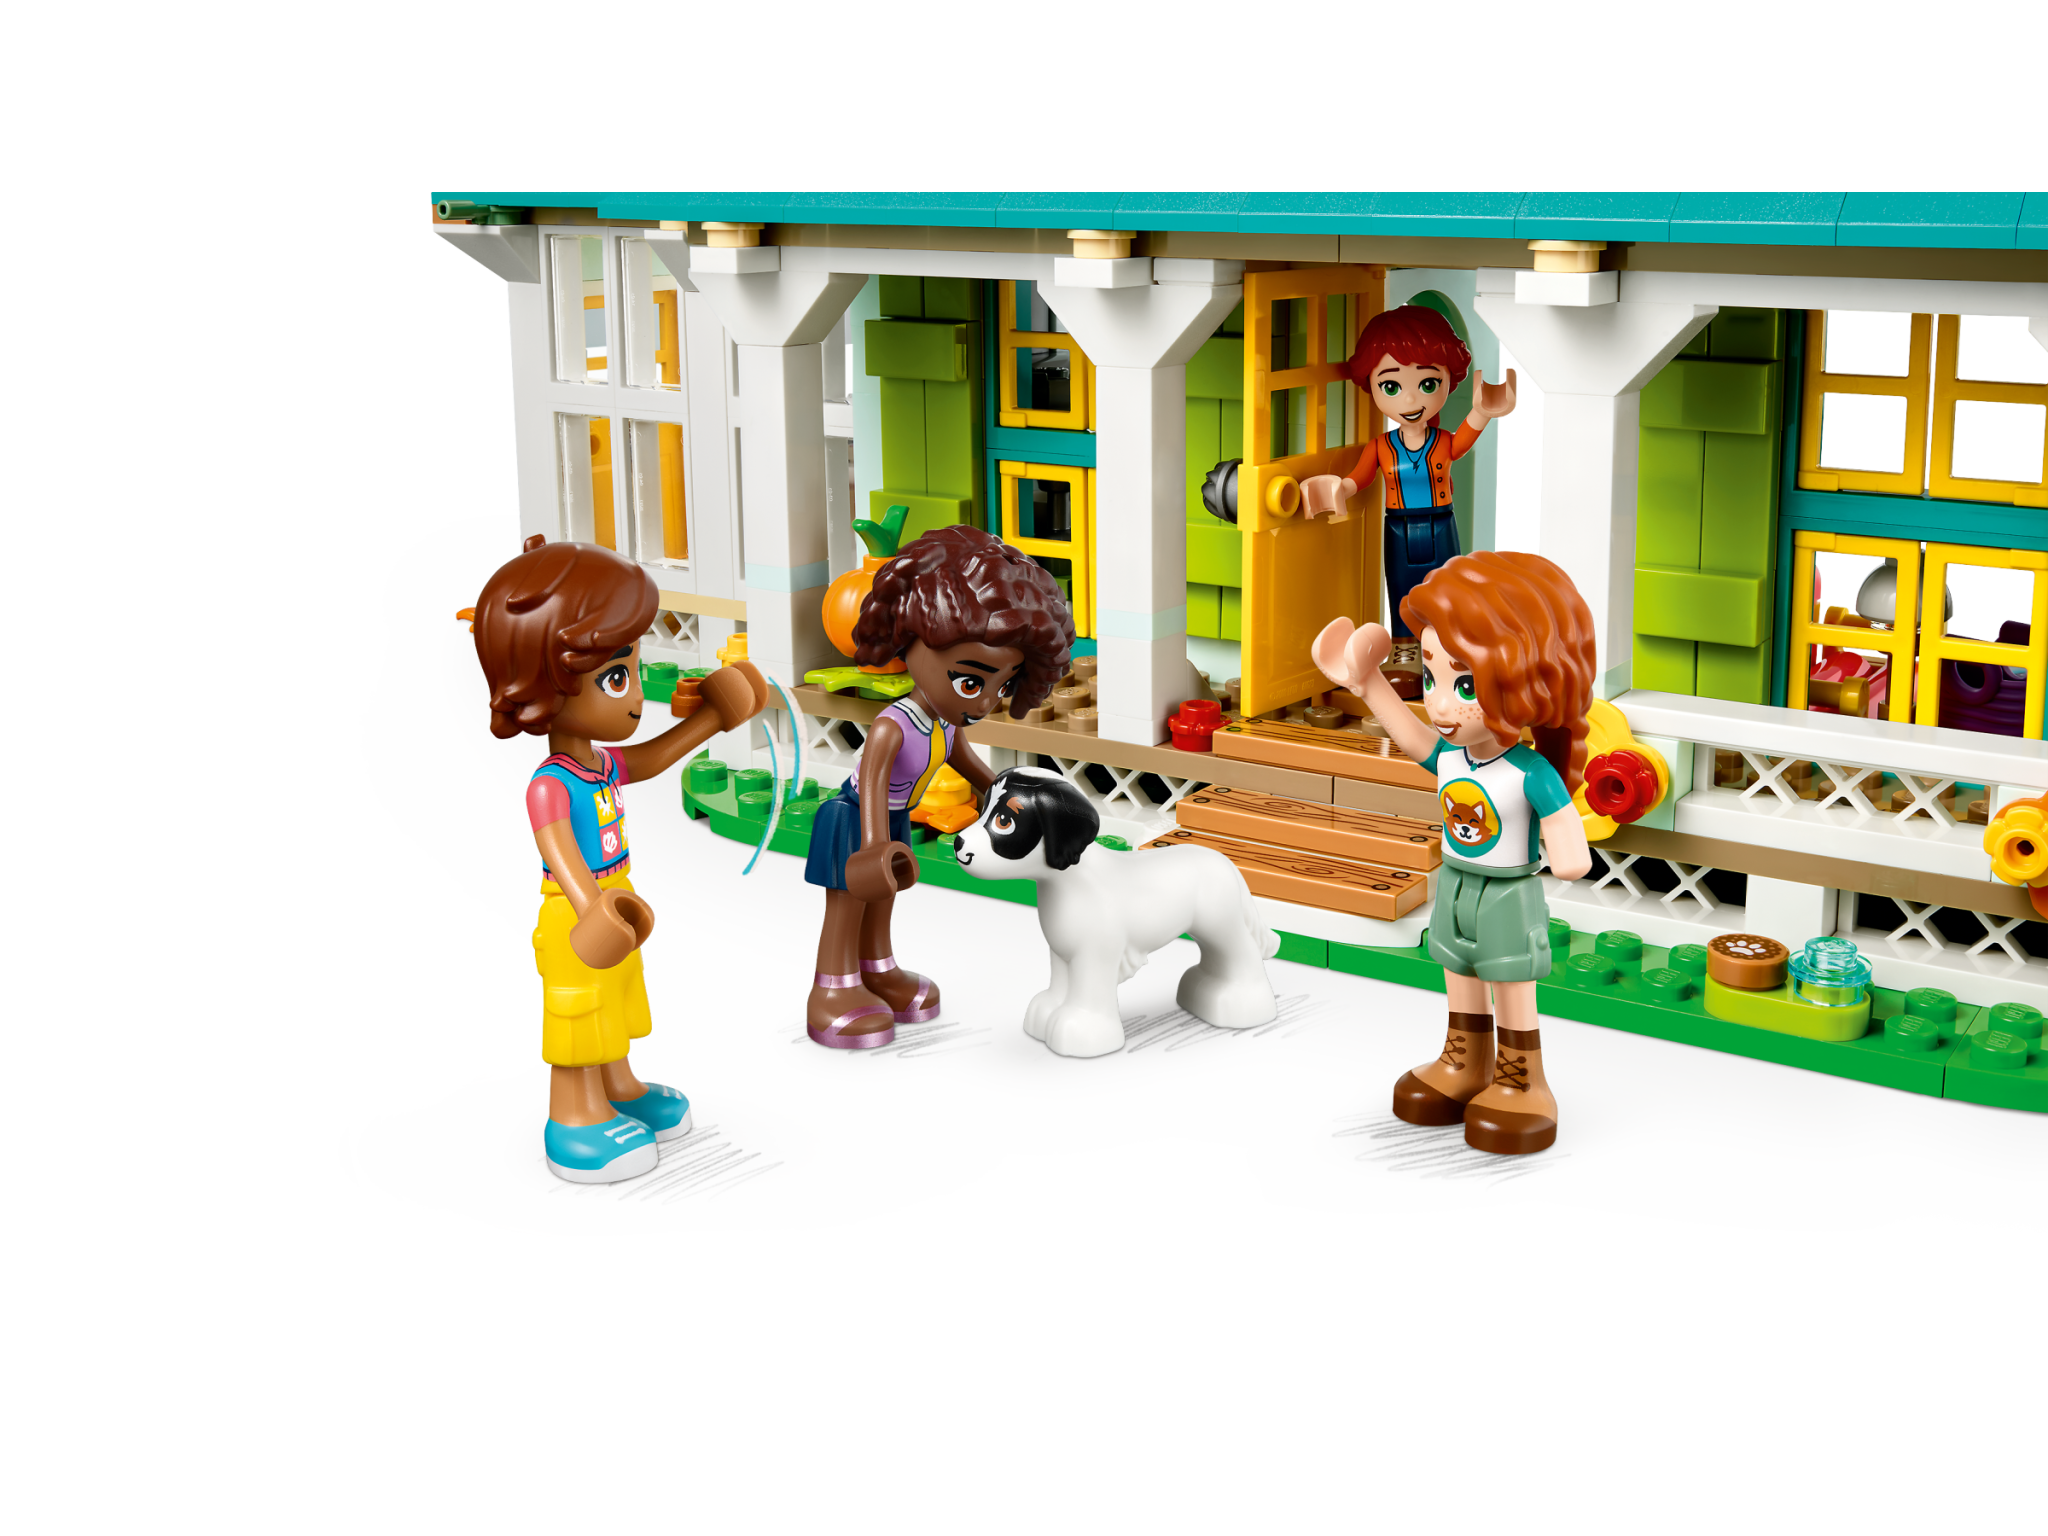 Lego Lego 41730 Friends - La maison d'Automn